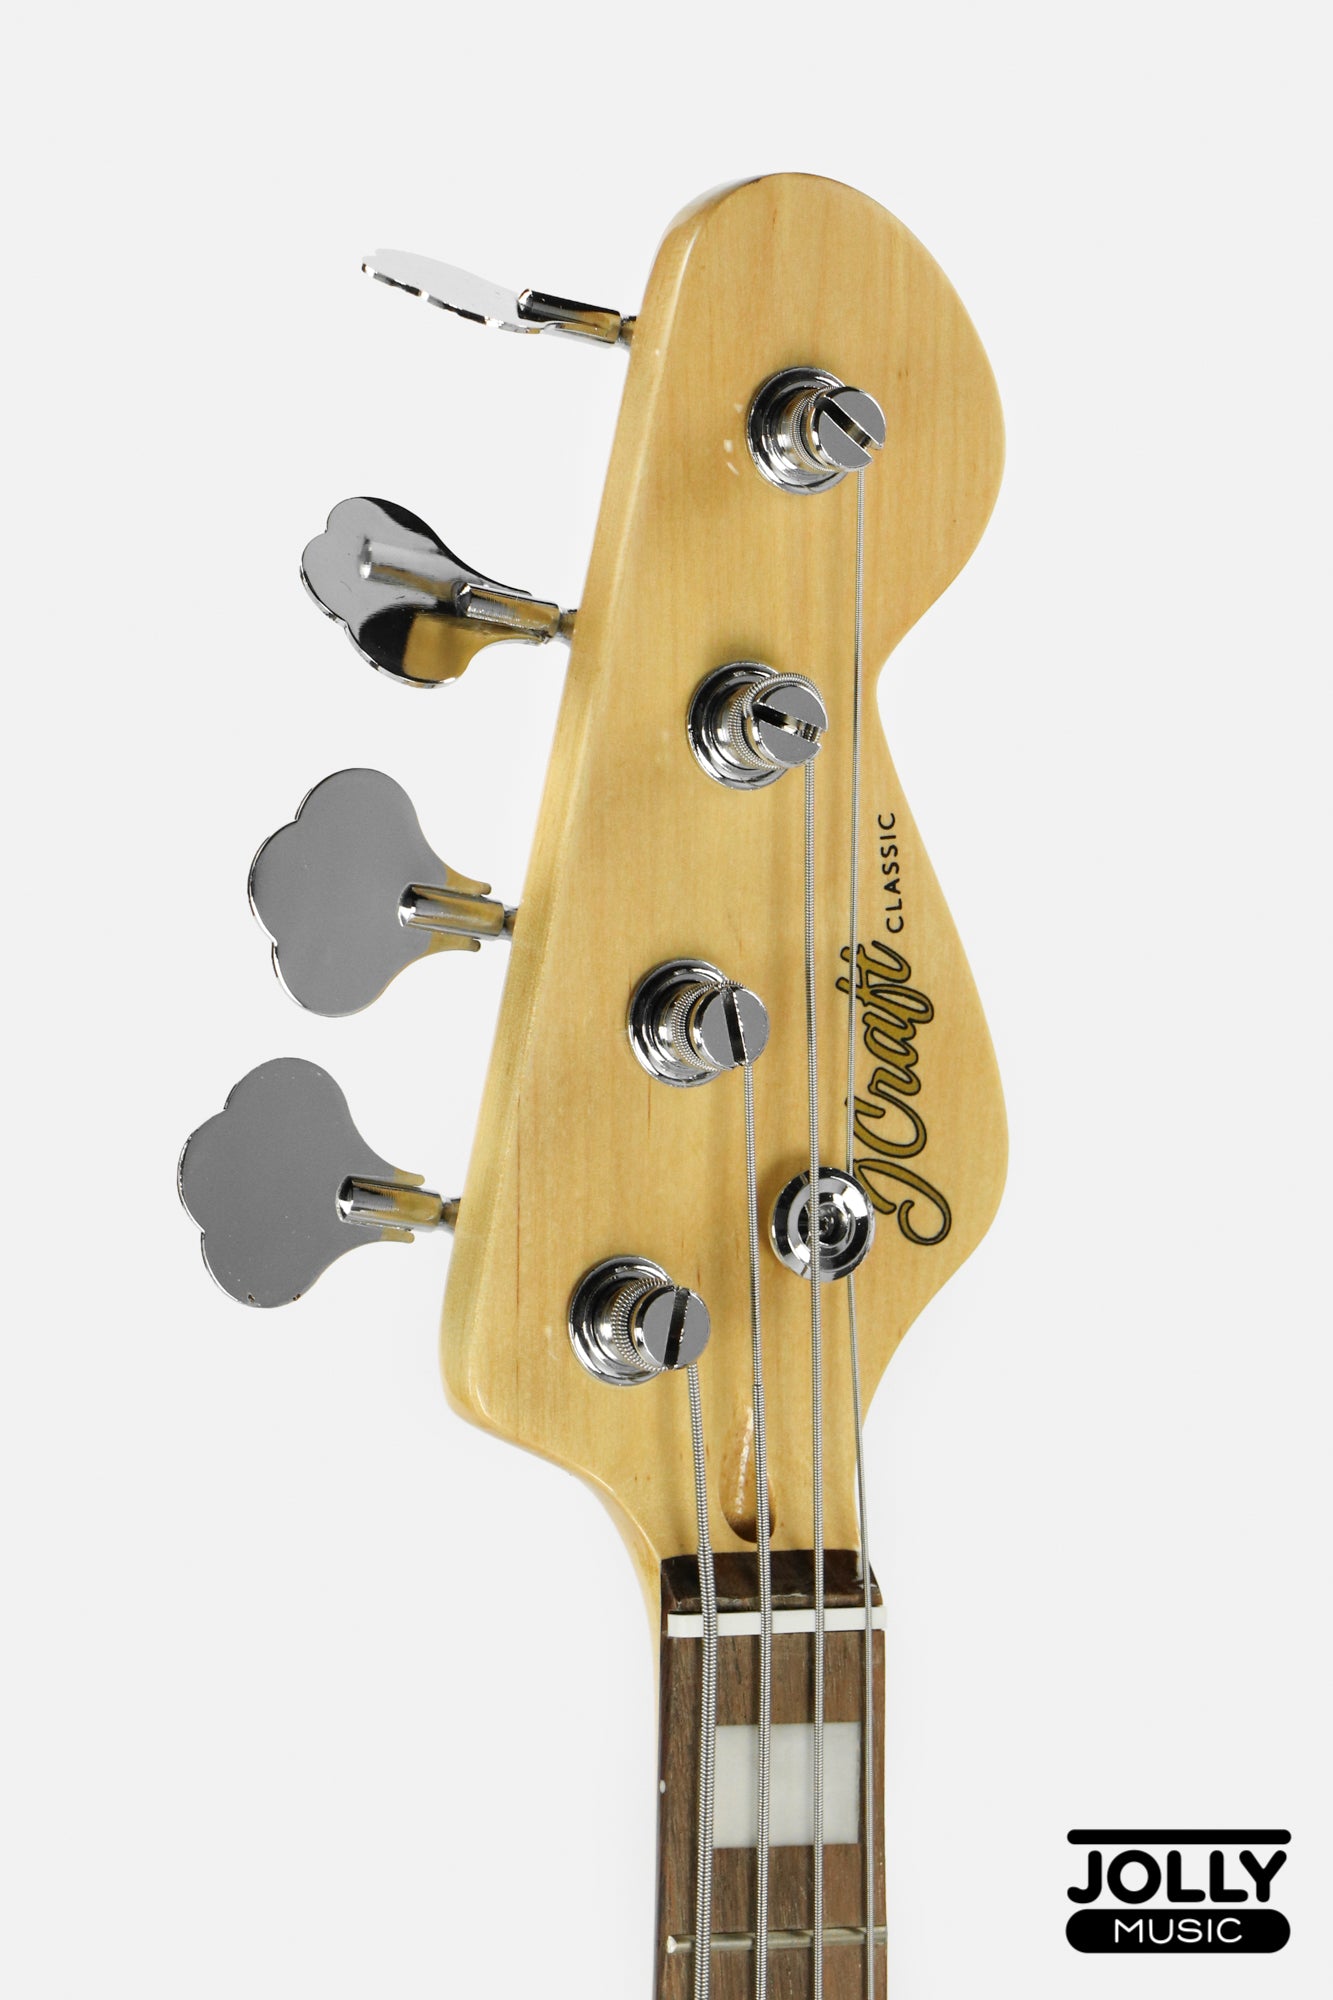 JCraft JB-2A J-Offset 5-String Bass Guitar - Metallic Gold